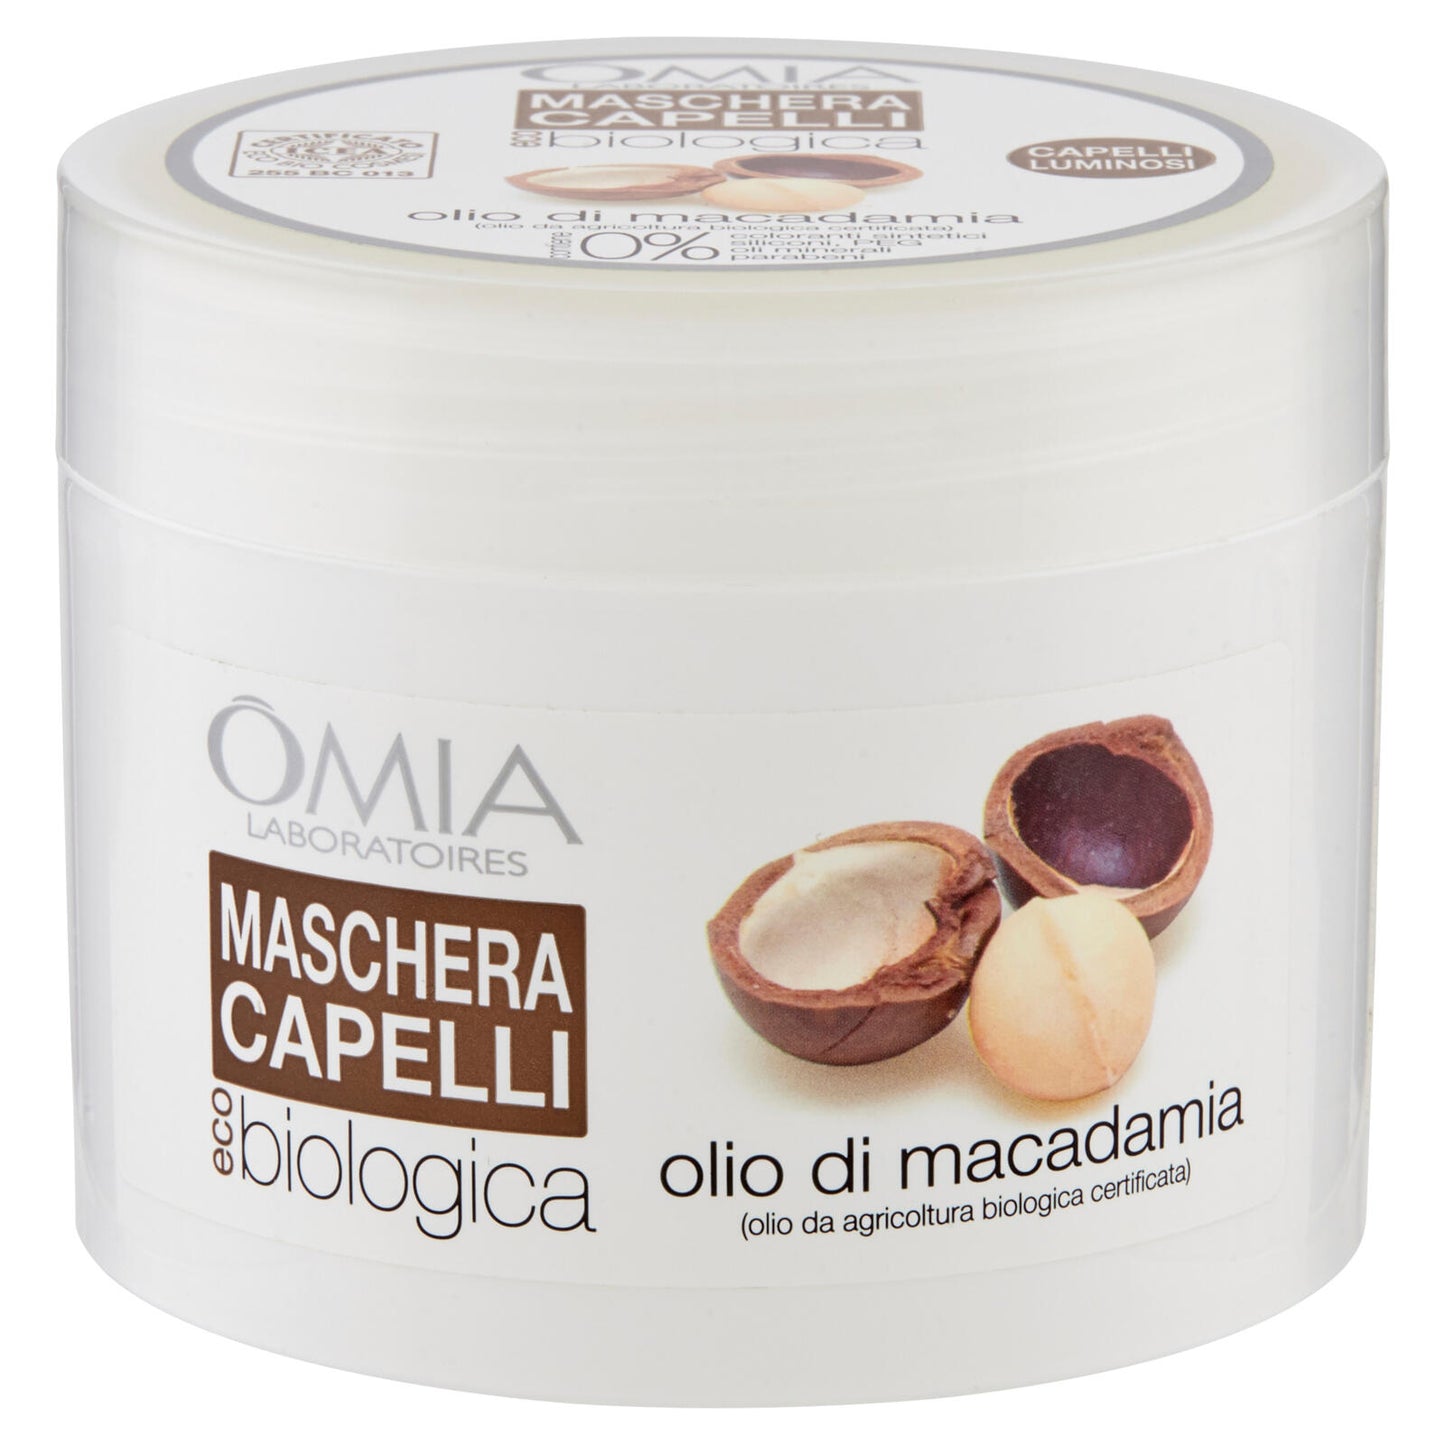 Omia Laboratoires eco biologica Maschera Capelli olio di macadamia 250 ml